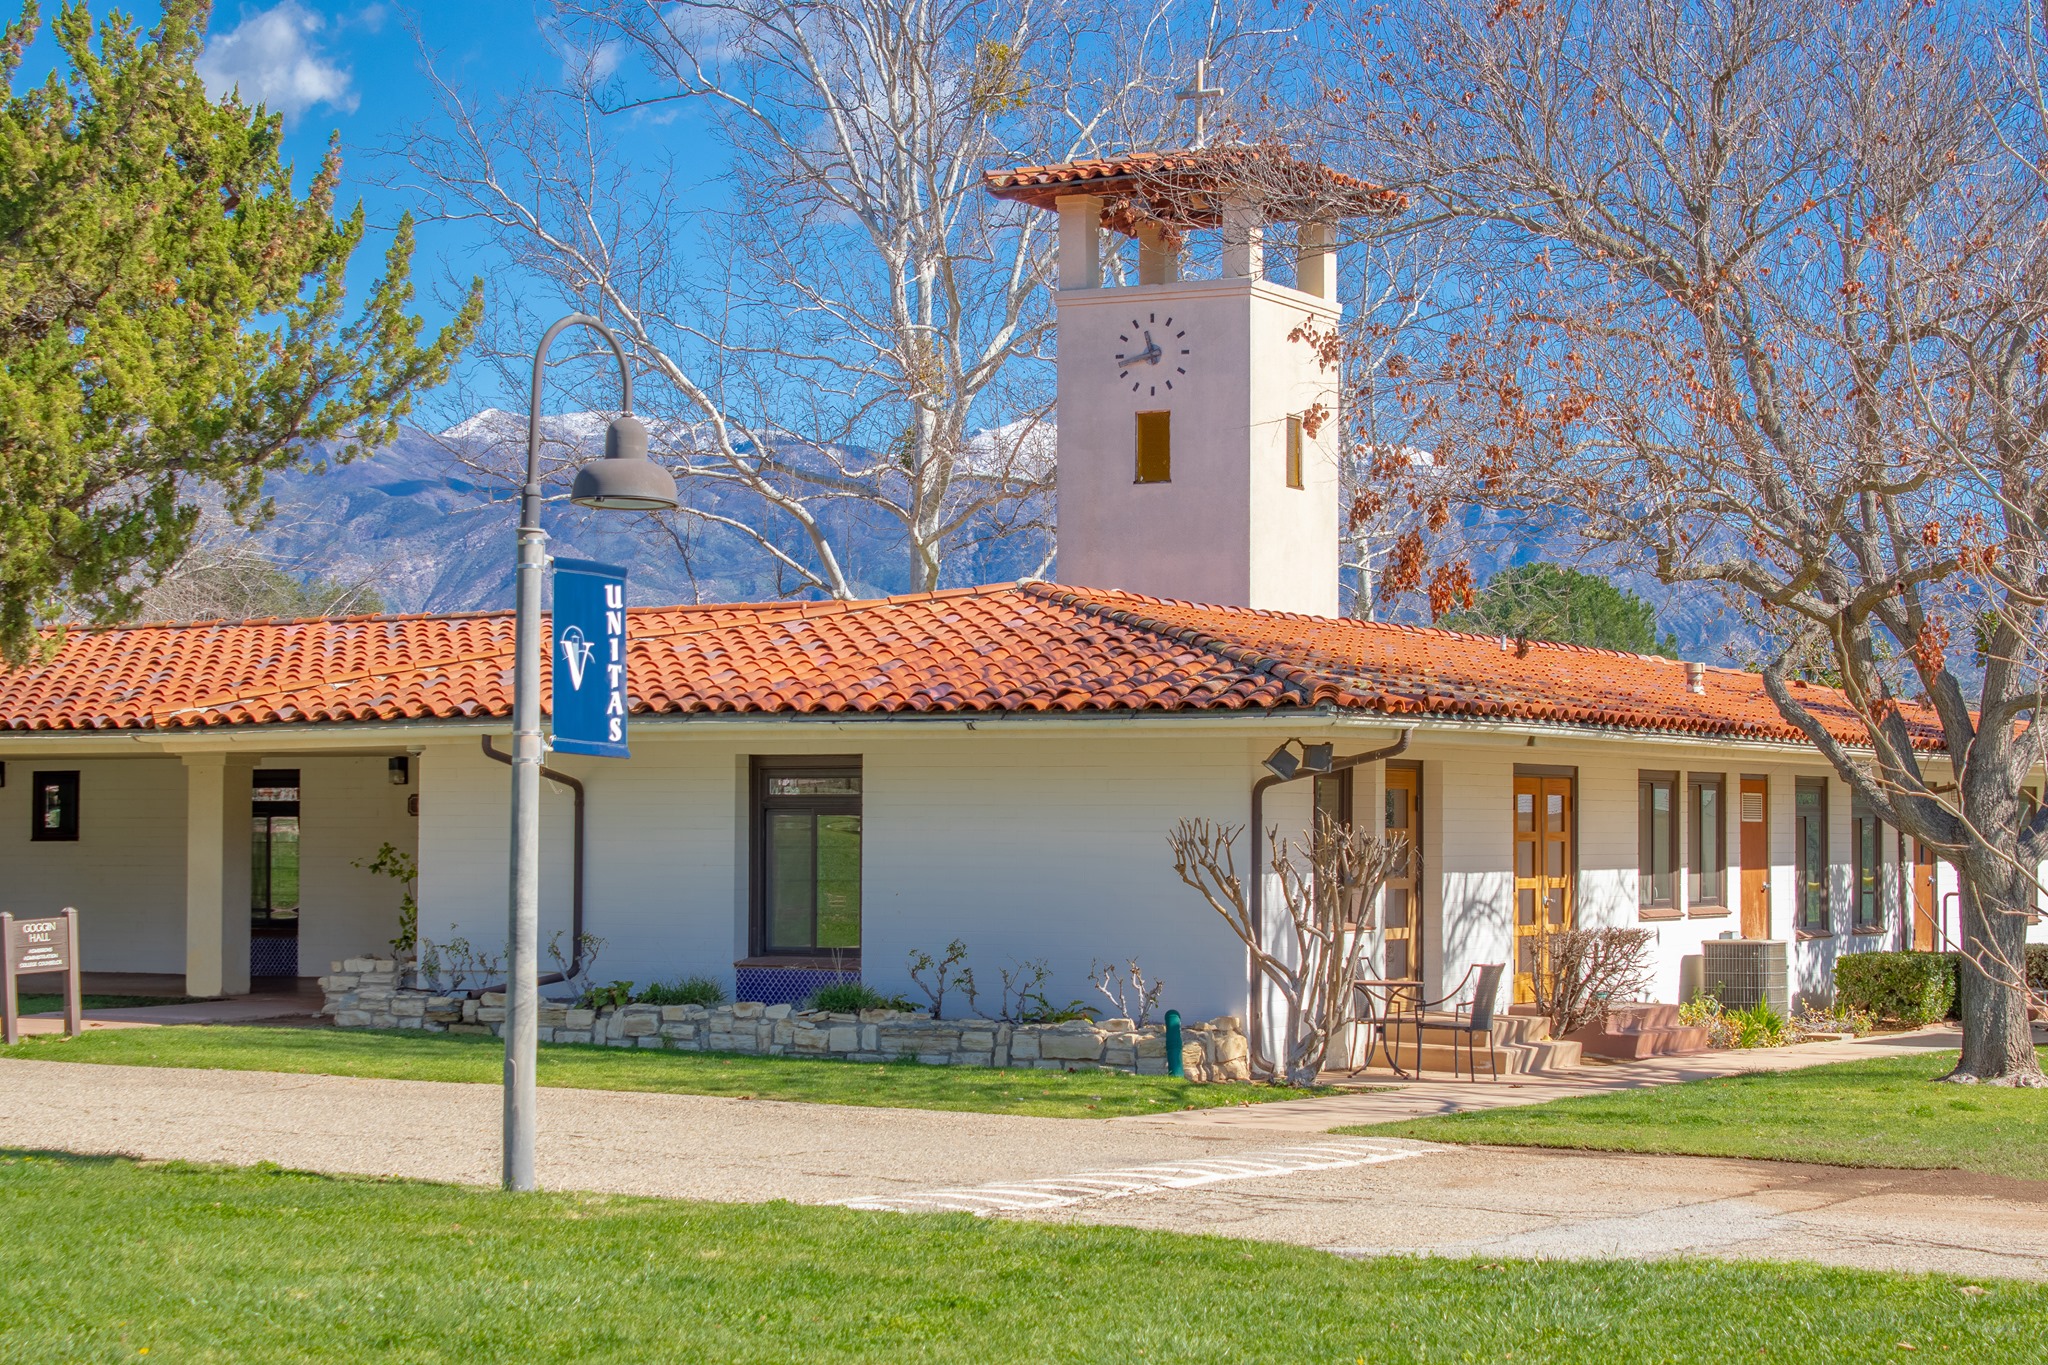 Villanova Preparatory School - Du học Trung học tại bang California với Học bổng hấp dẫn